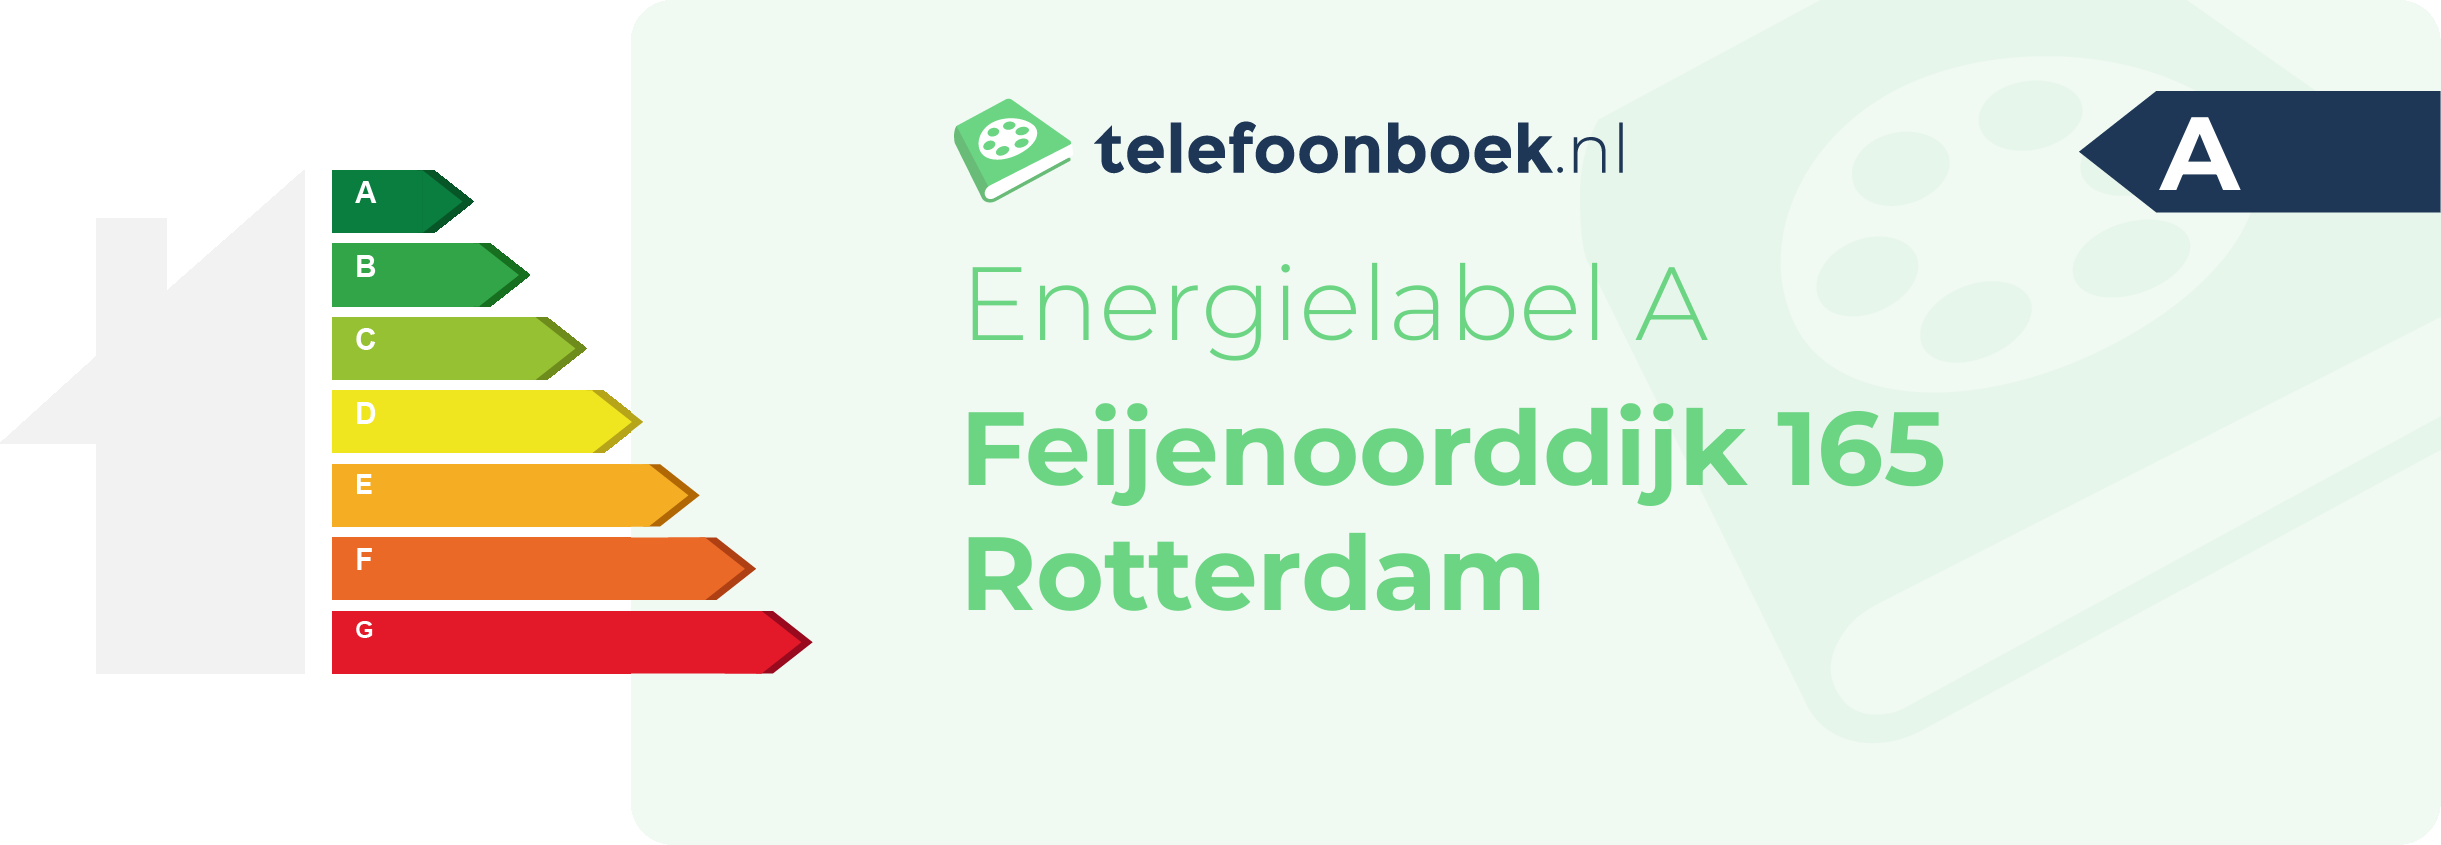 Energielabel Feijenoorddijk 165 Rotterdam